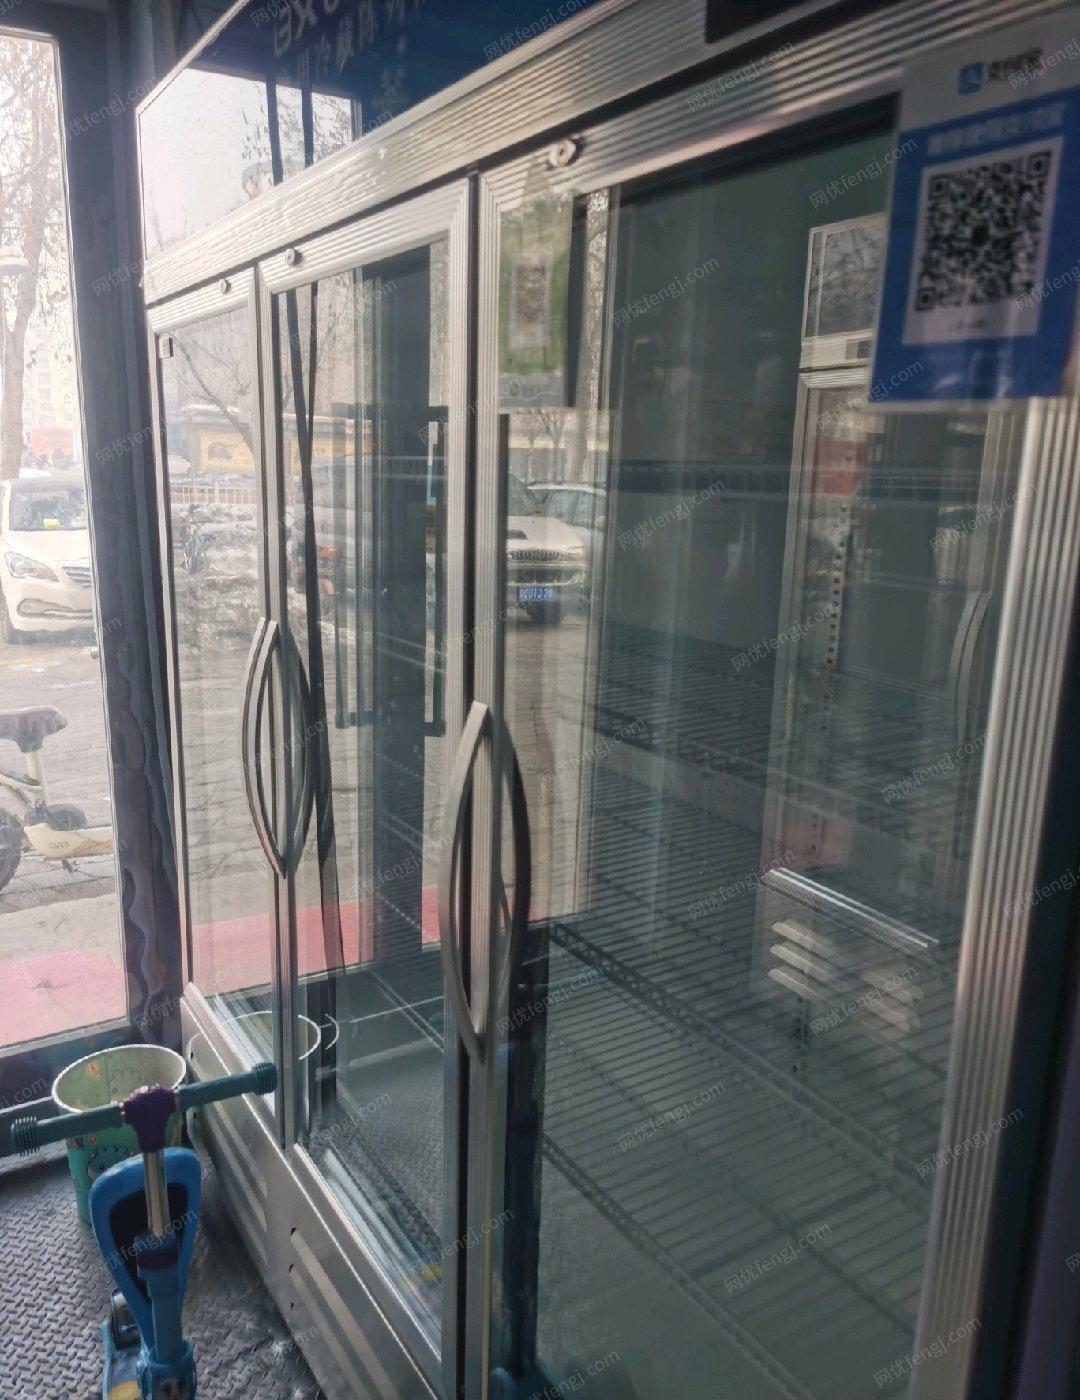 新疆石河子用了一个月三开门冷藏展示柜，很新，生意转让，低价出售